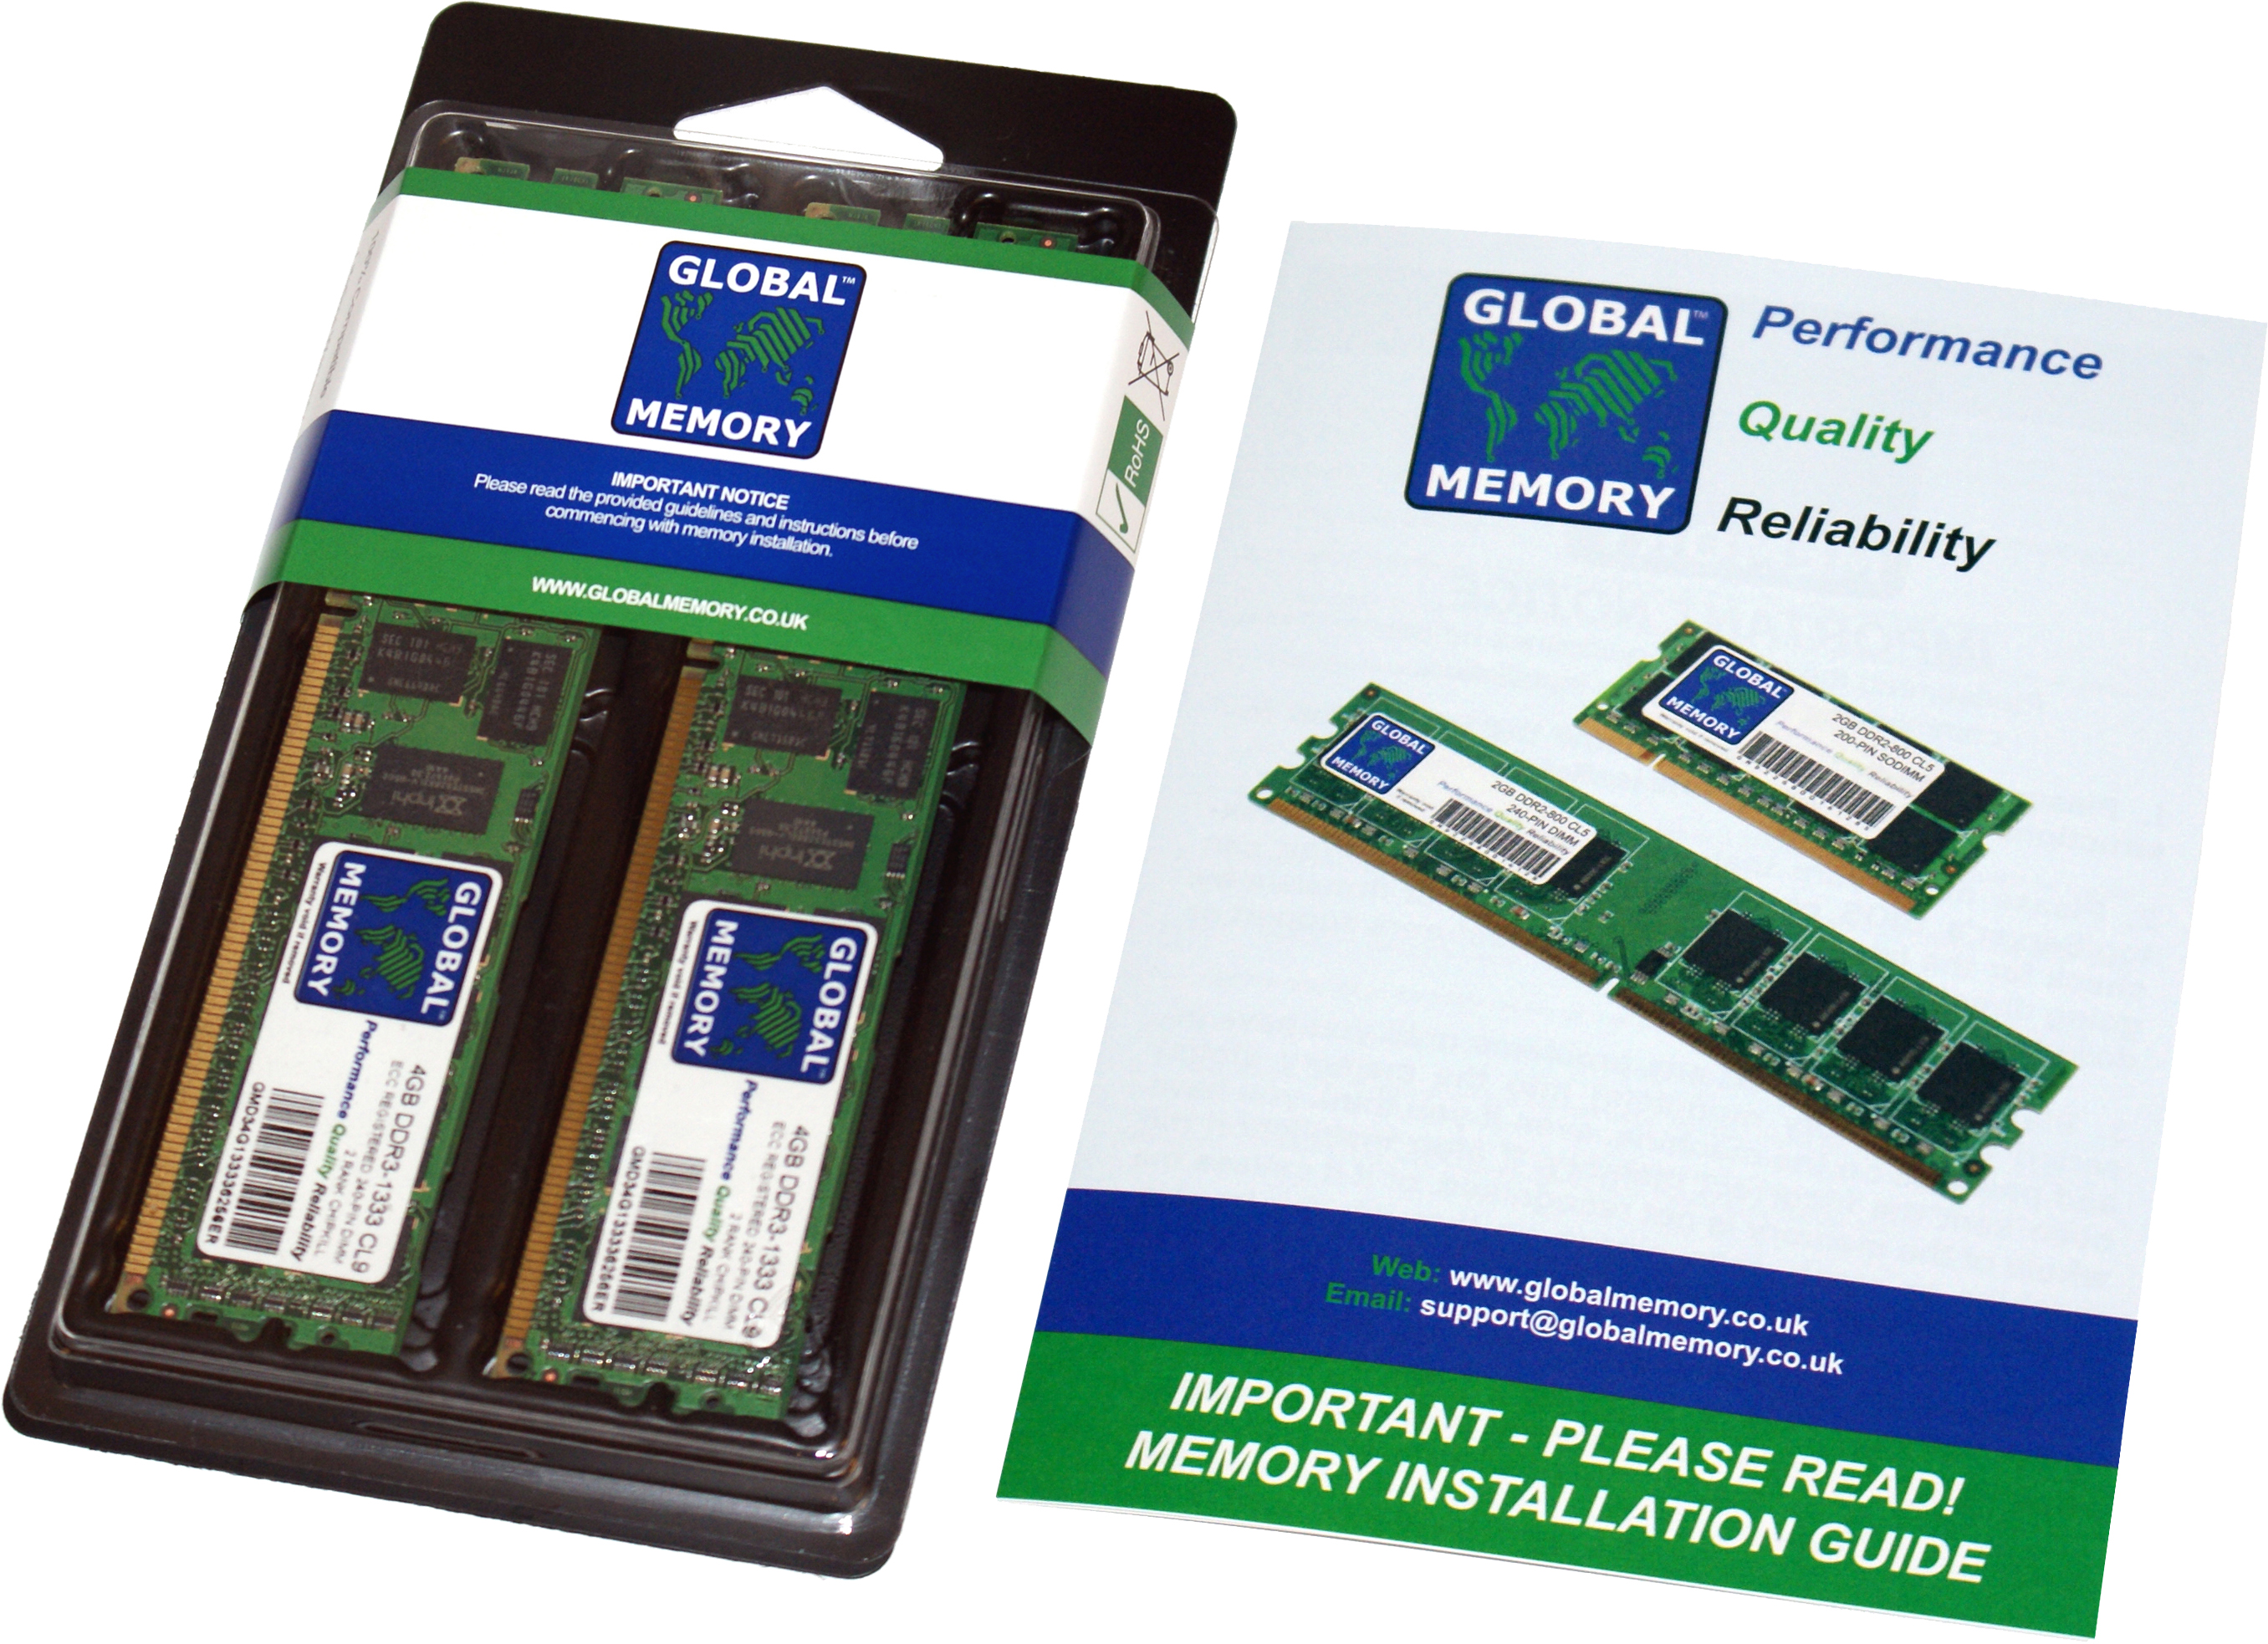 64GB (2 x 32GB) DDR4 2933MHz PC4-23400 288-PIN ECC REGISTERED DIMM (RDIMM) MEMORY RAM KIT FOR HEWLETT-PACKARD SERVERS/WORKSTATIONS (4 RANK KIT CHIPKILL)